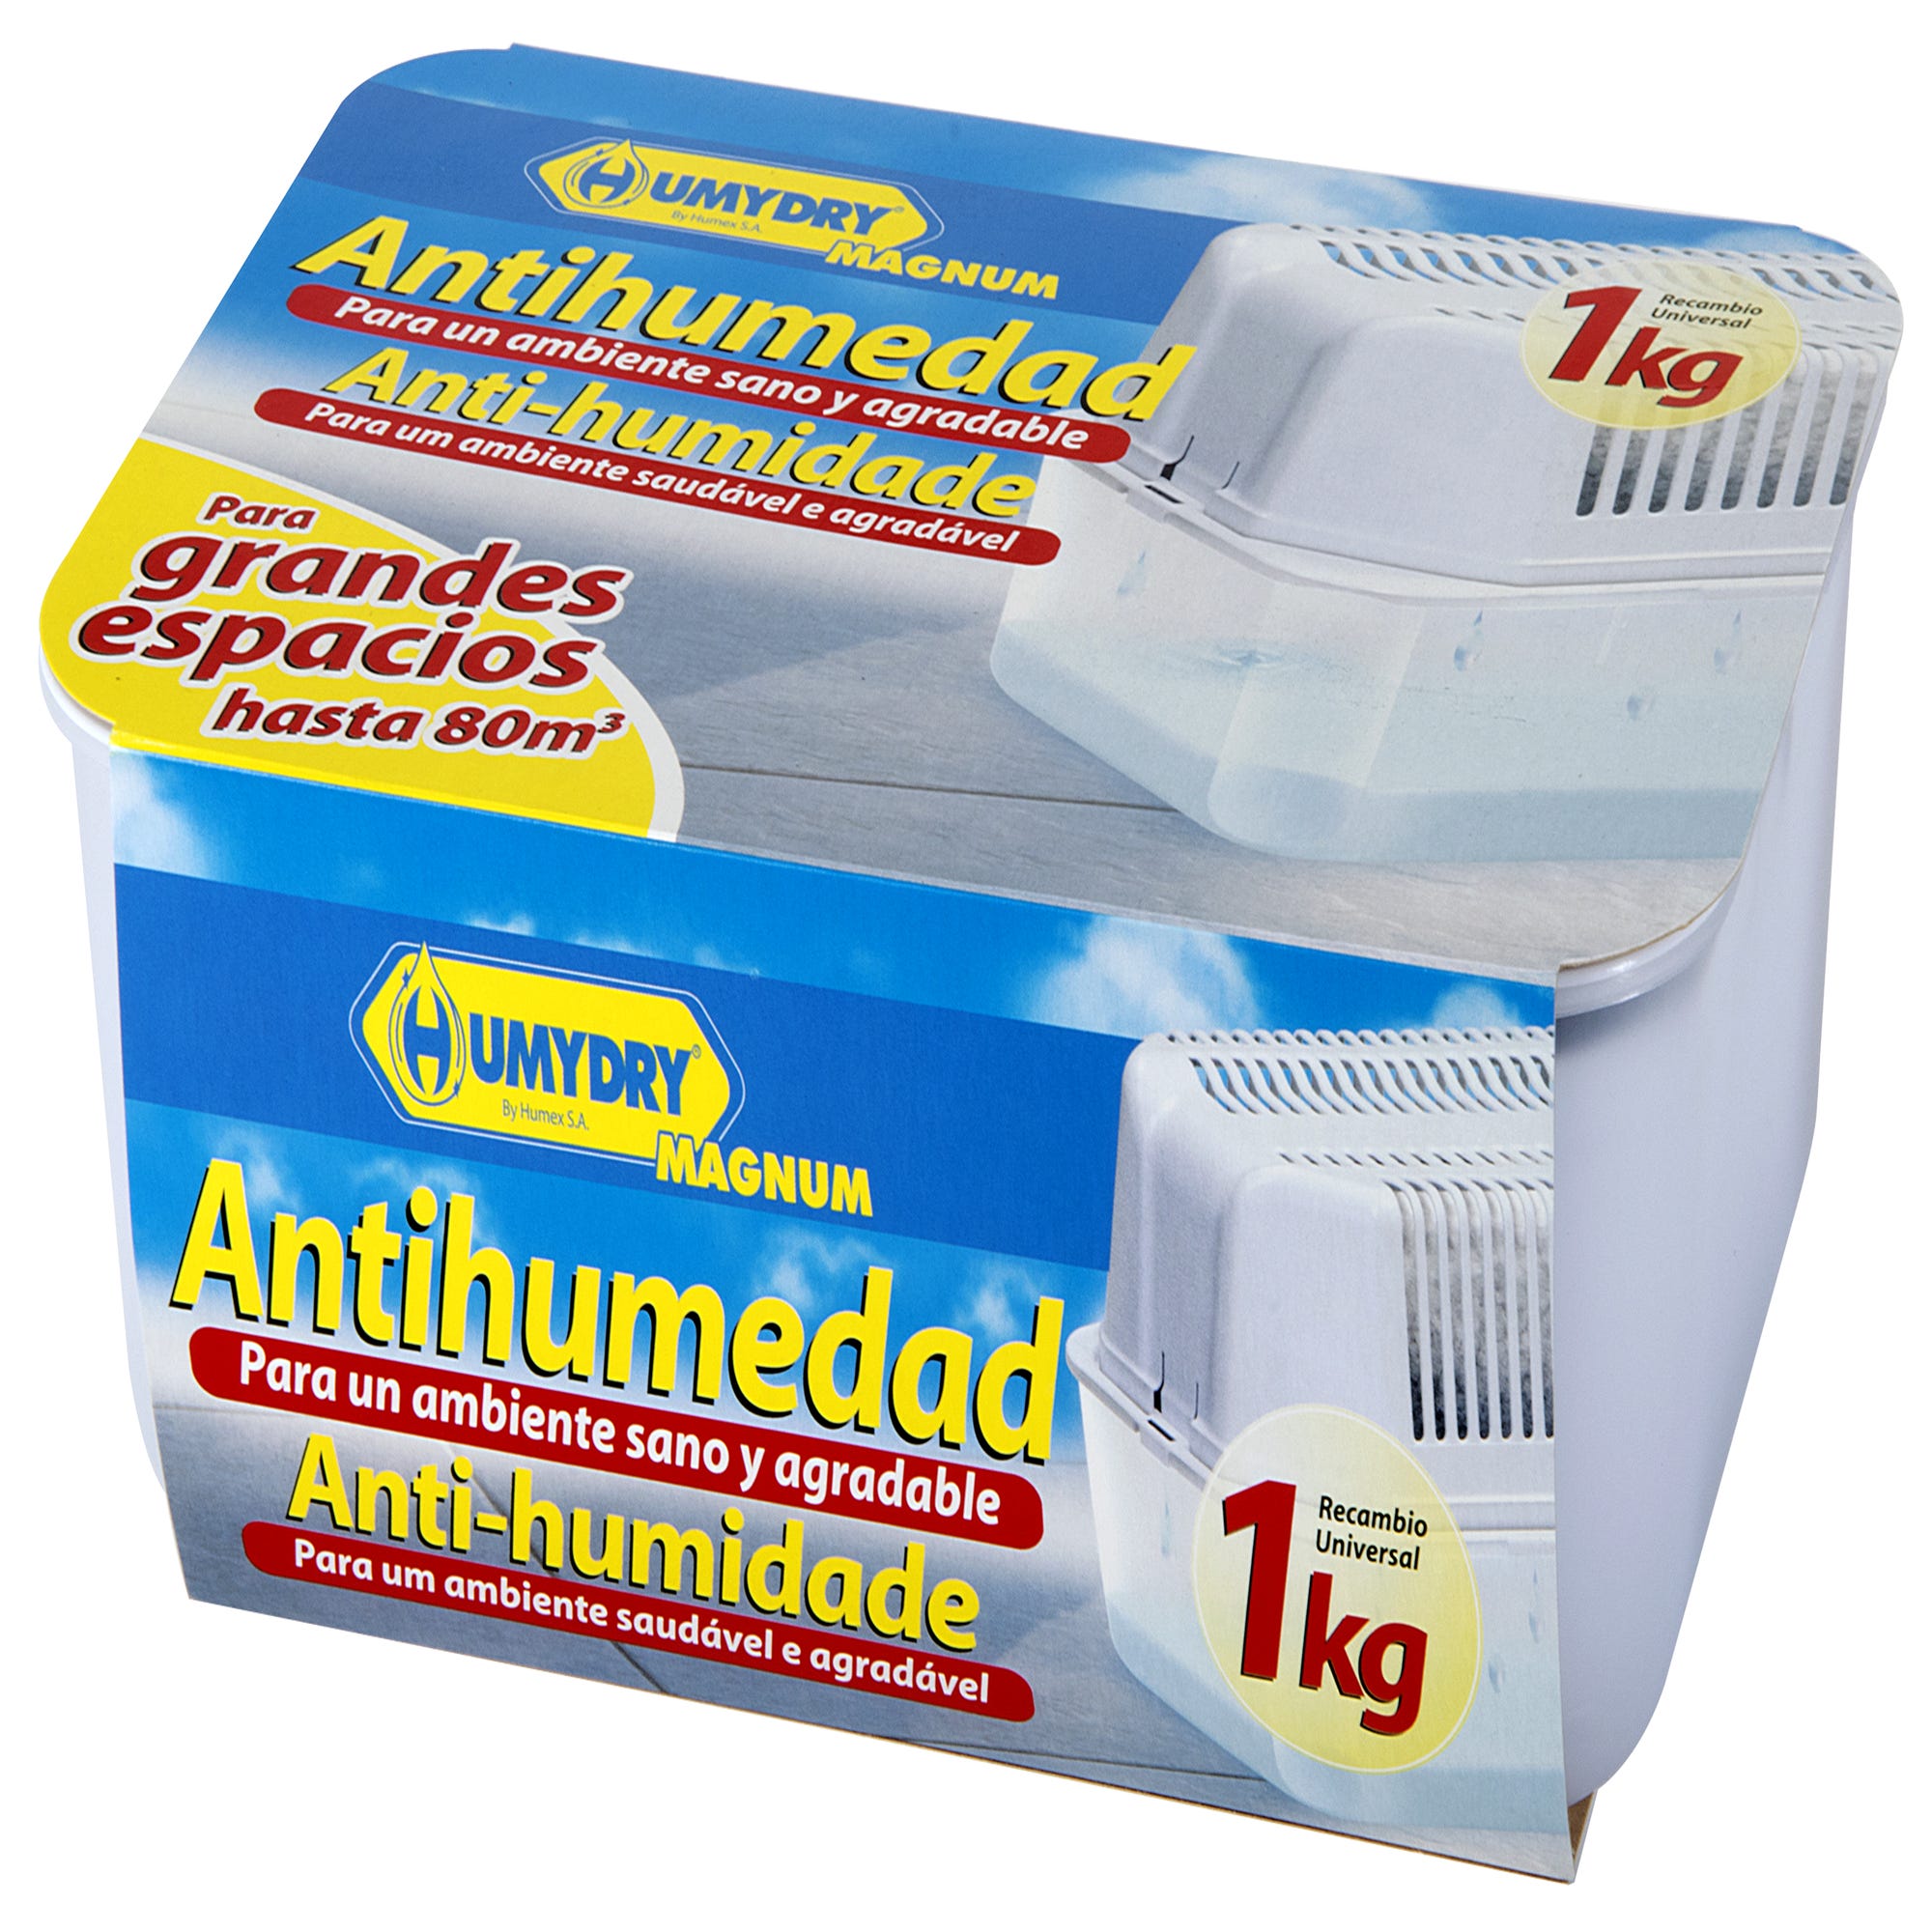 Pack 4 recambios antihumedad Humydry 450 gr